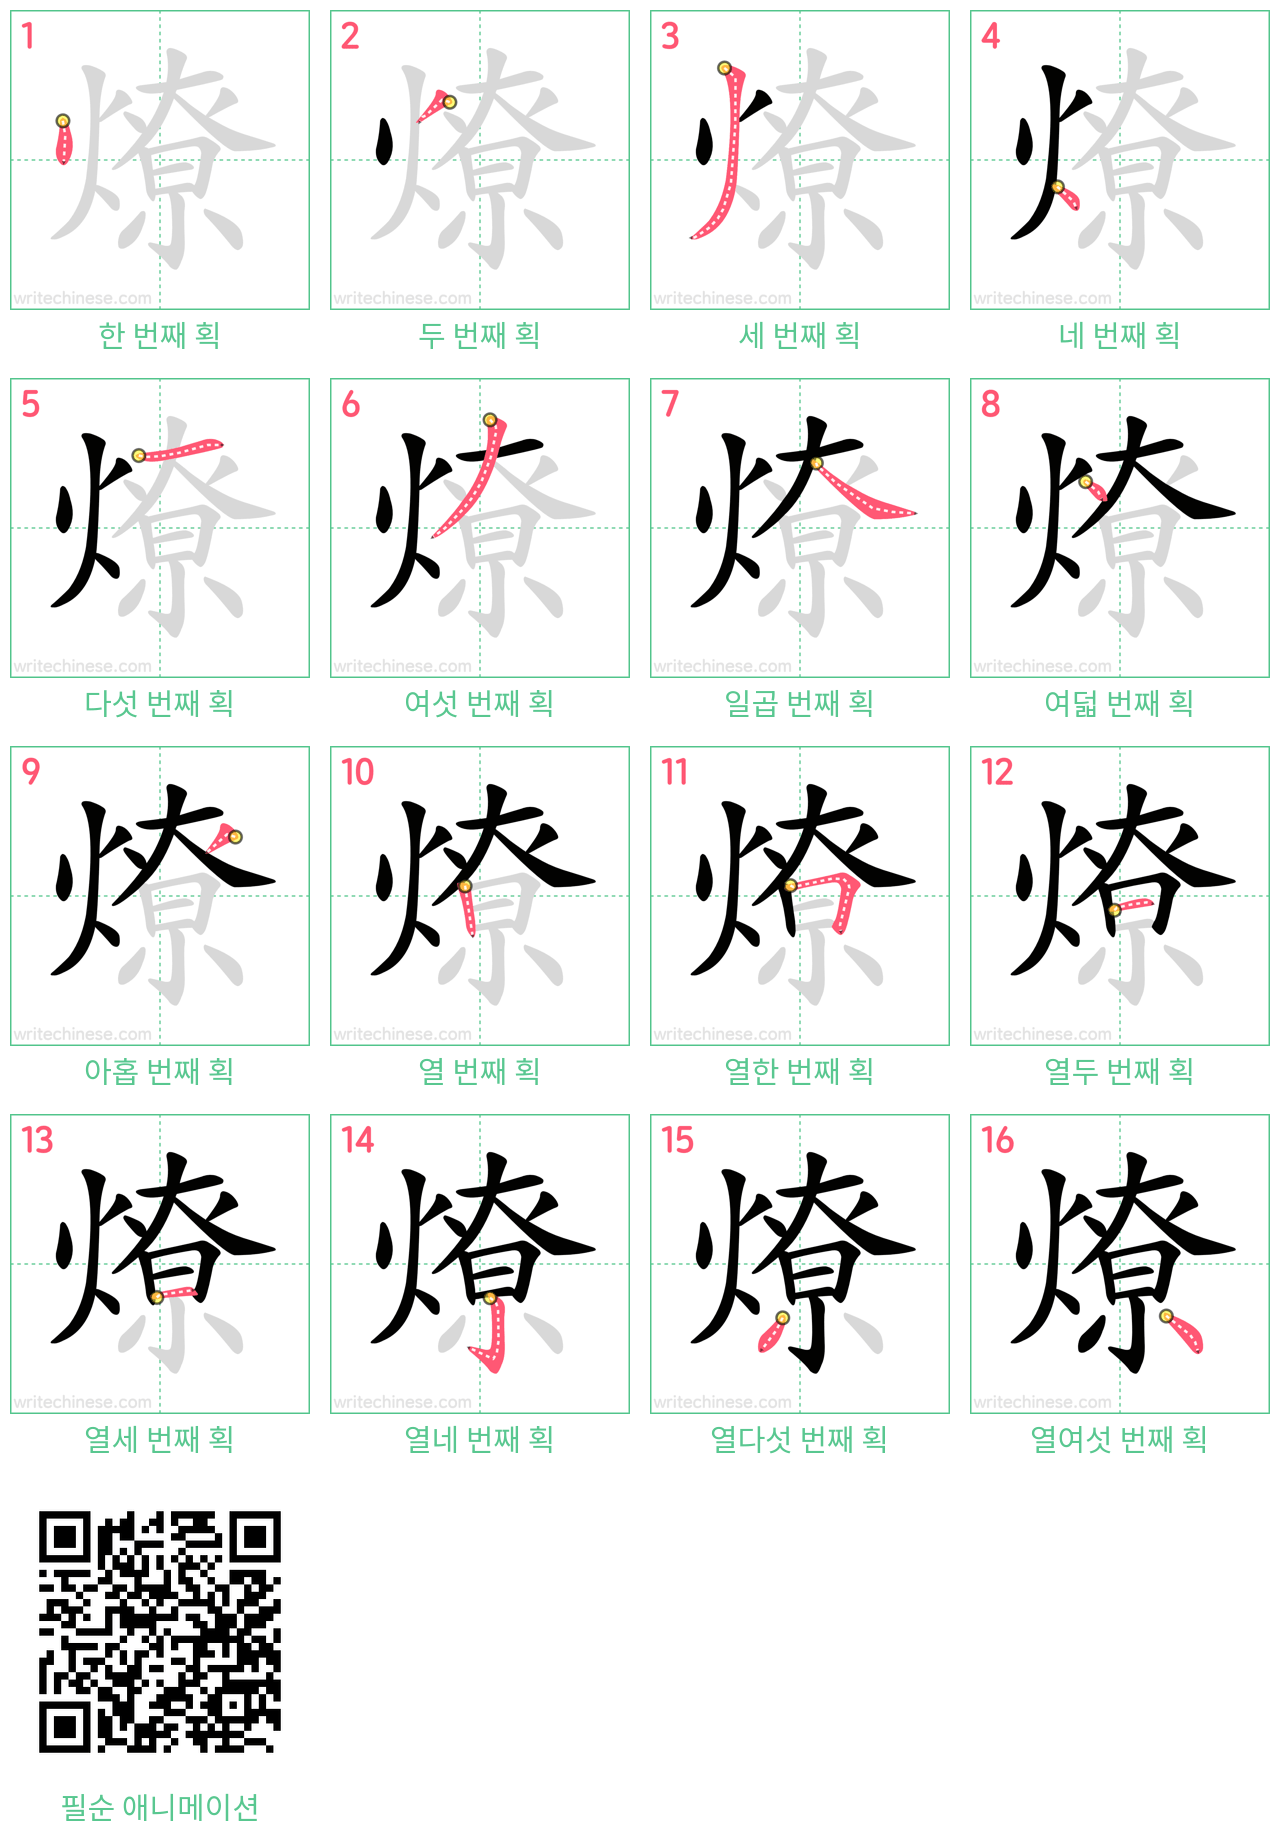 燎 step-by-step stroke order diagrams